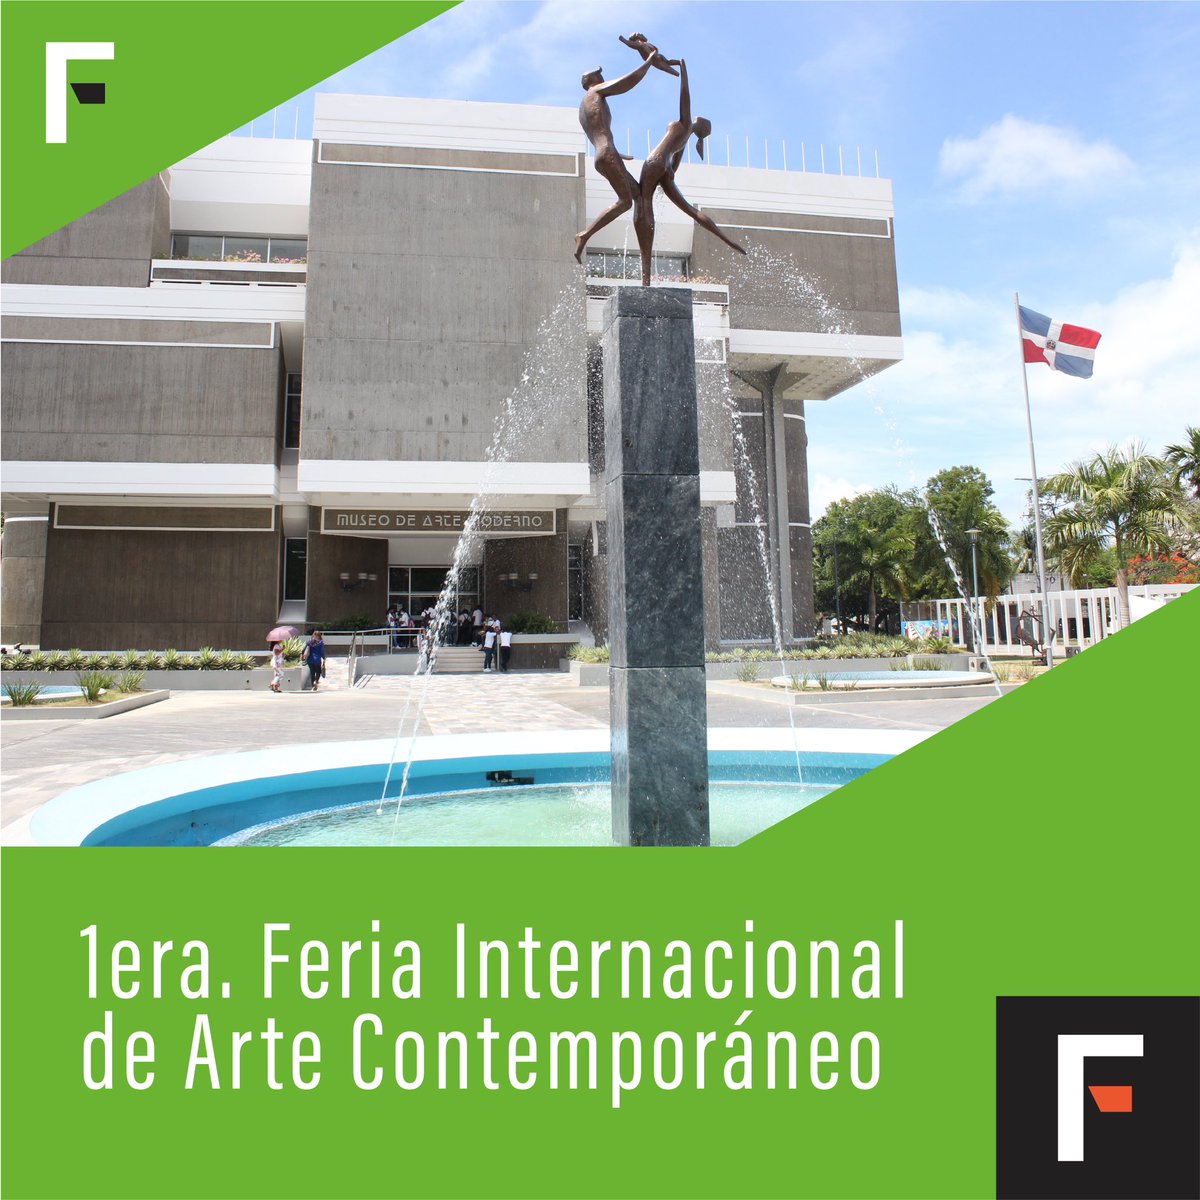 A partir de este 19 de abril, “Enlazando Mundos” en el Museo de Arte Moderno✨ Ven a celebrar junto a @fiaci y @museodeartemodernord la diversidad e innovación en el arte contemporáneo a nivel global y sus herramientas para potenciar las experiencias artísticas inmersivas.